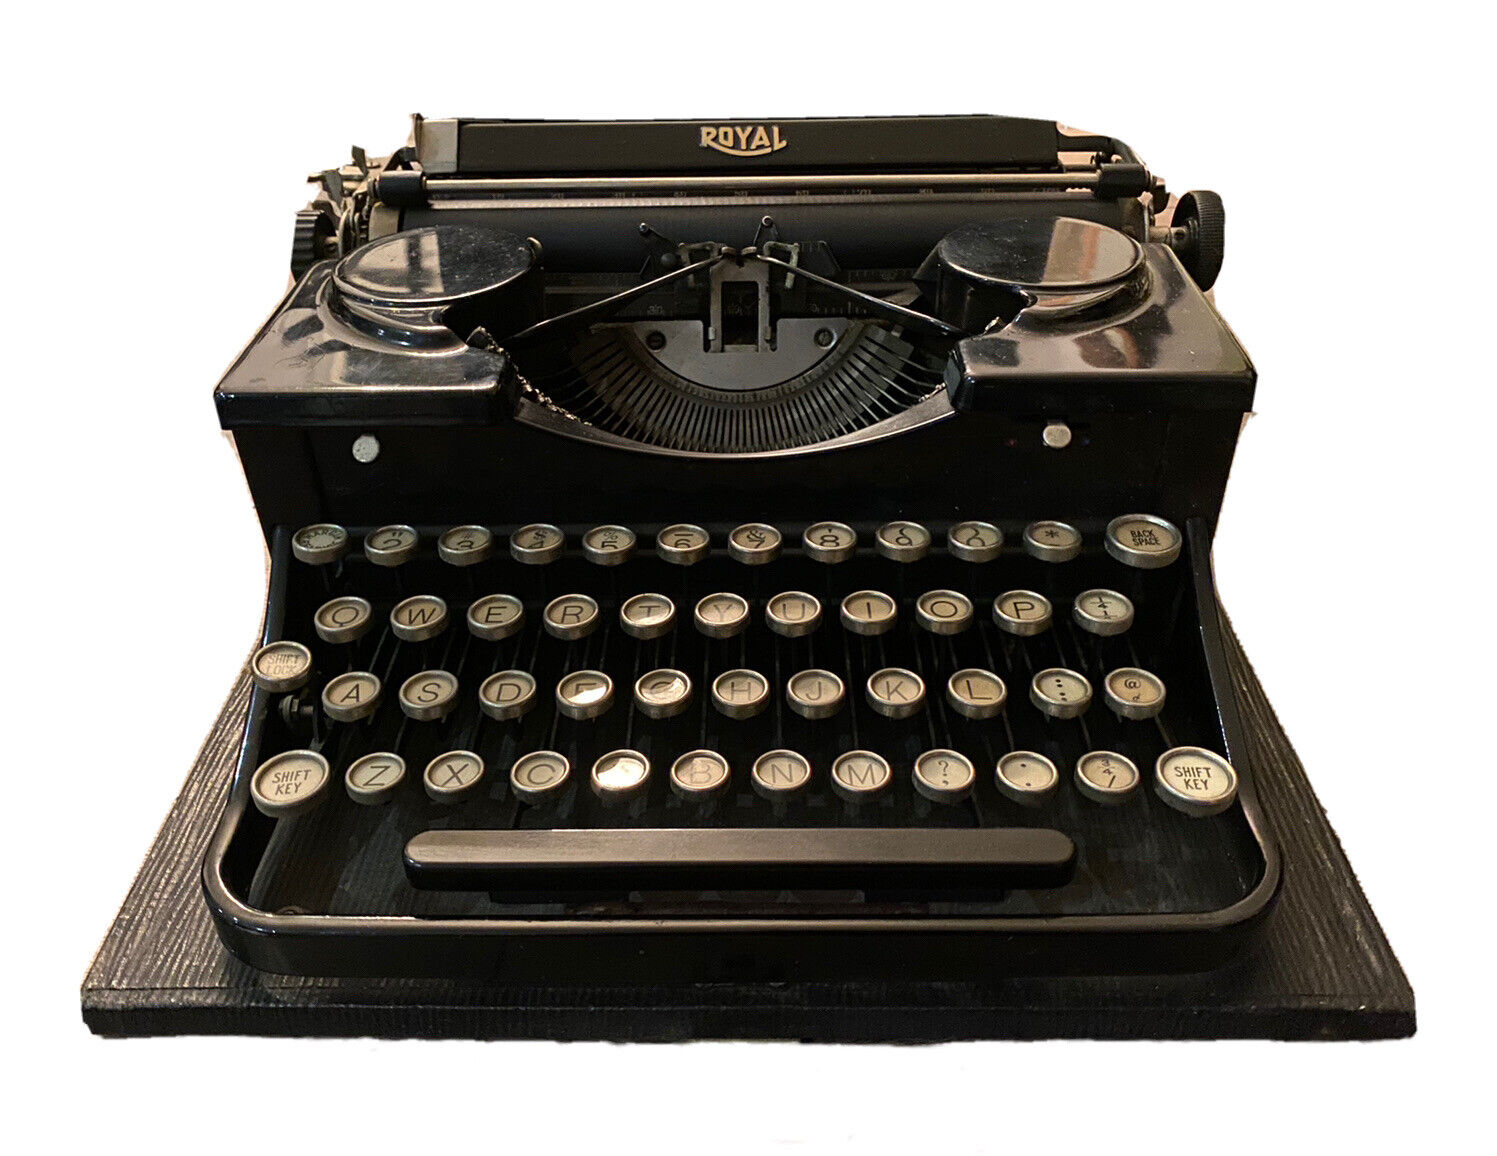 Rare Vintage Royal Model P Portable Typewriter, Black, With Case